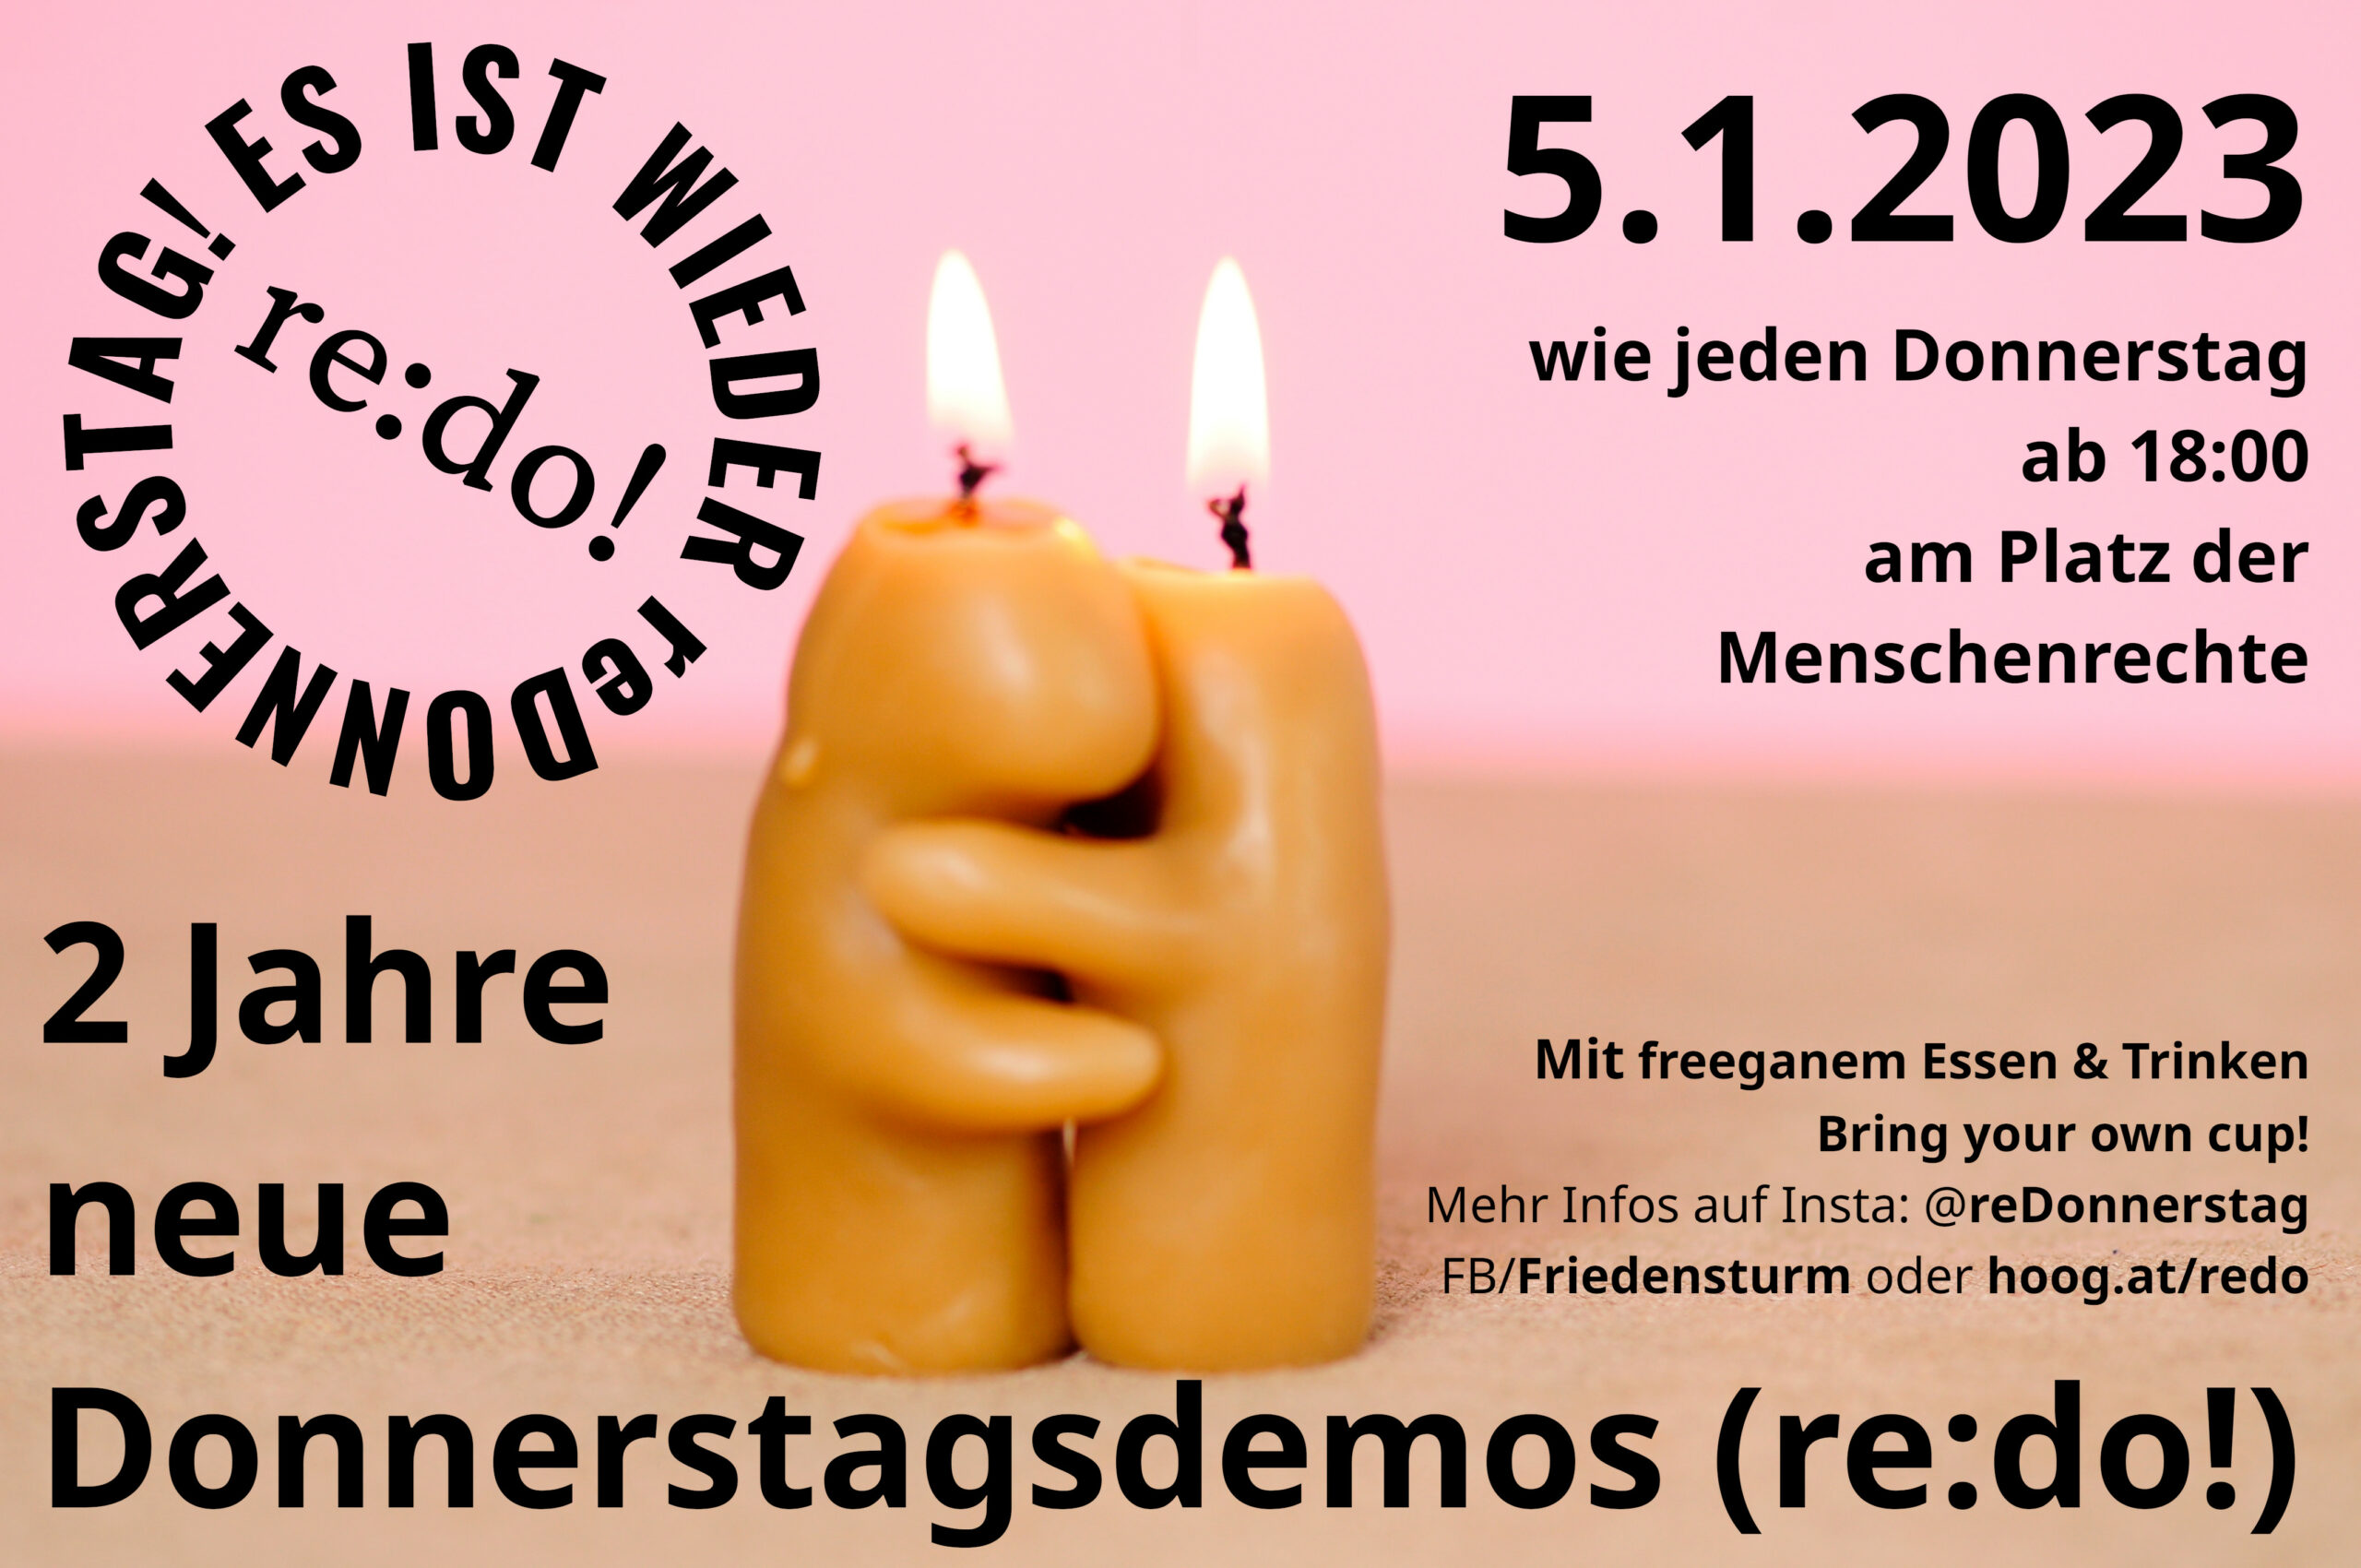 Zwei Jahre neue Donnerstagsdemos (re:do!) am am 05. 01. 2023., ab 18:00 am Platz der Menschenrechte in Wien